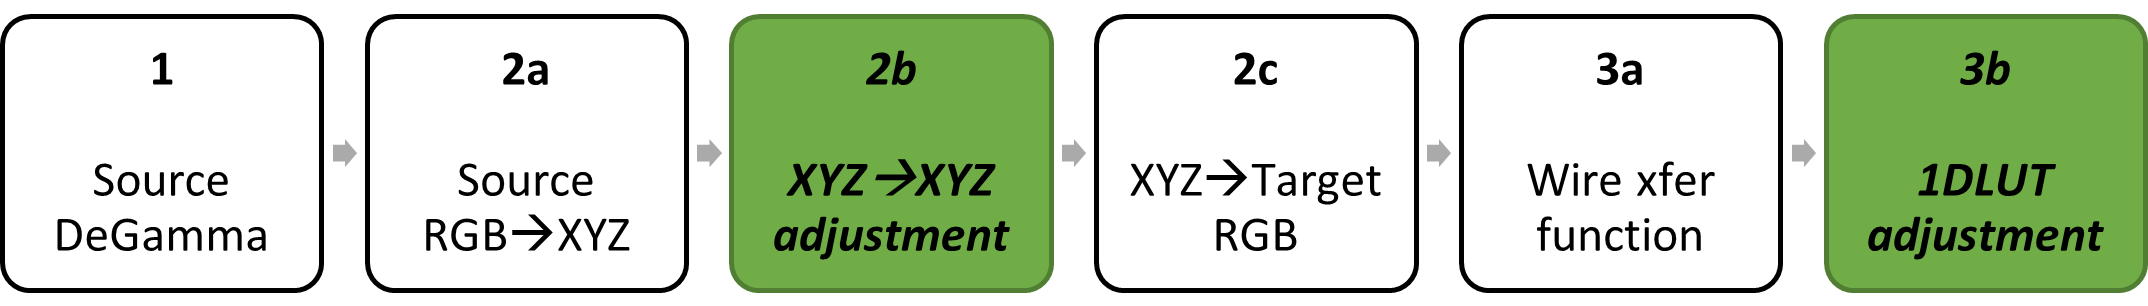 區塊圖：來源 degamma;色彩矩陣會分解成來源 RGB 到 XYZ、XYZ 到 XYZ，並將 XYZ 分解為目標 RGB;target regamma decomposed into wire transfer function， 1DLUT adjustment